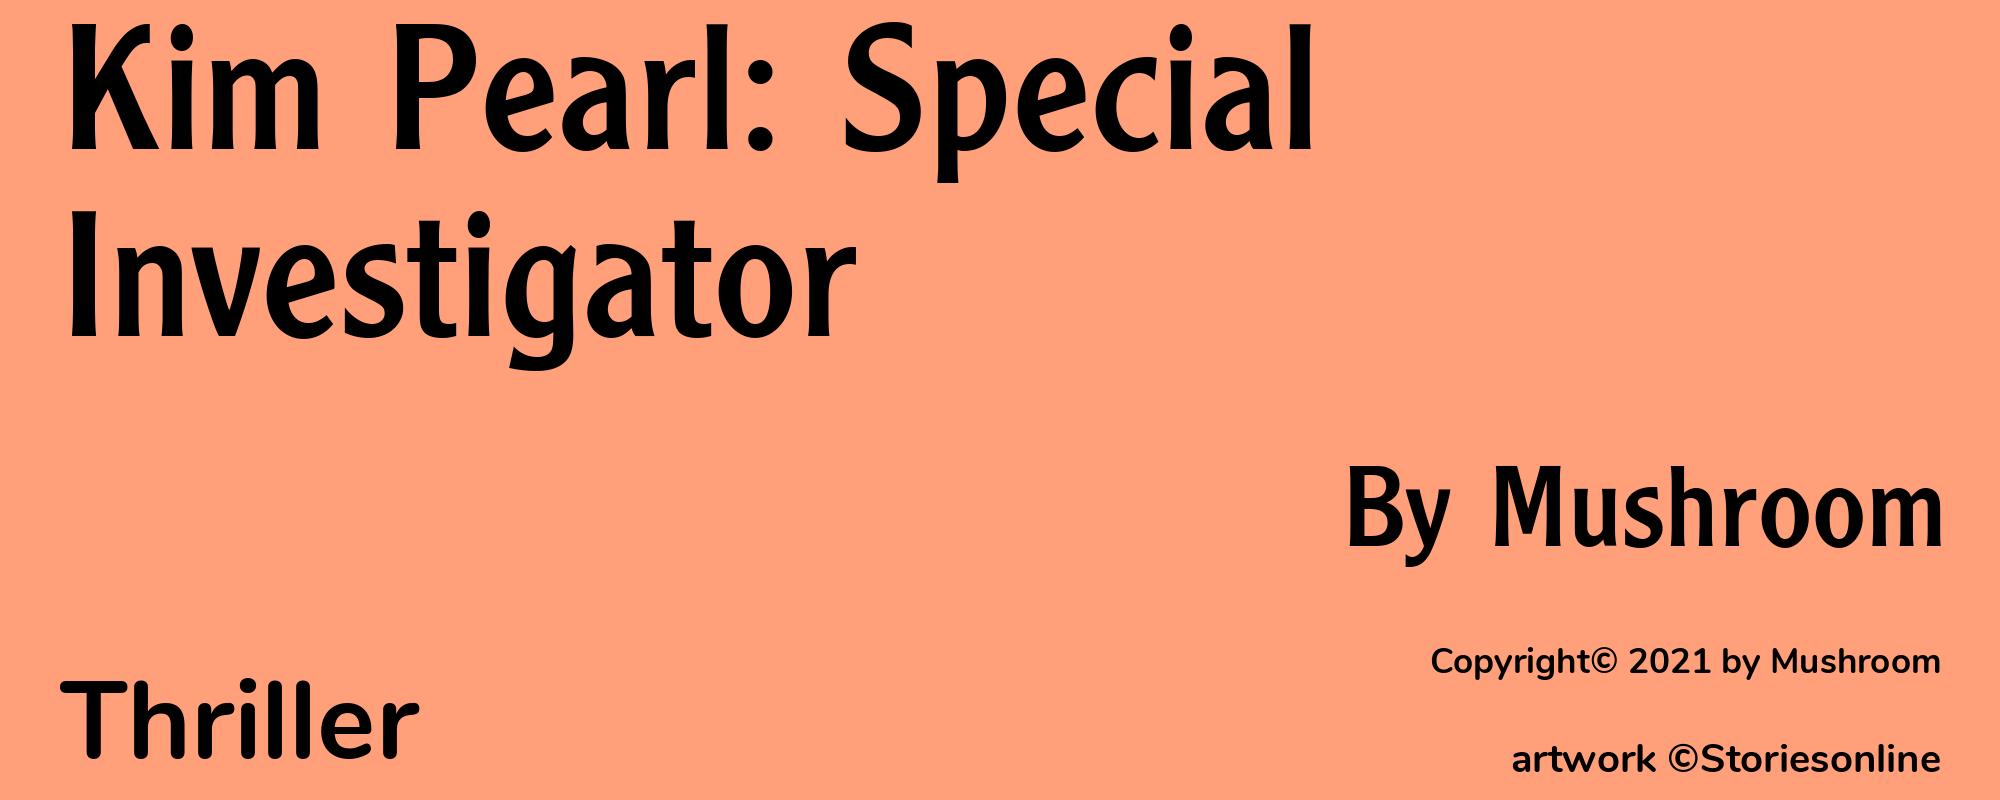 Kim Pearl: Special Investigator - Cover